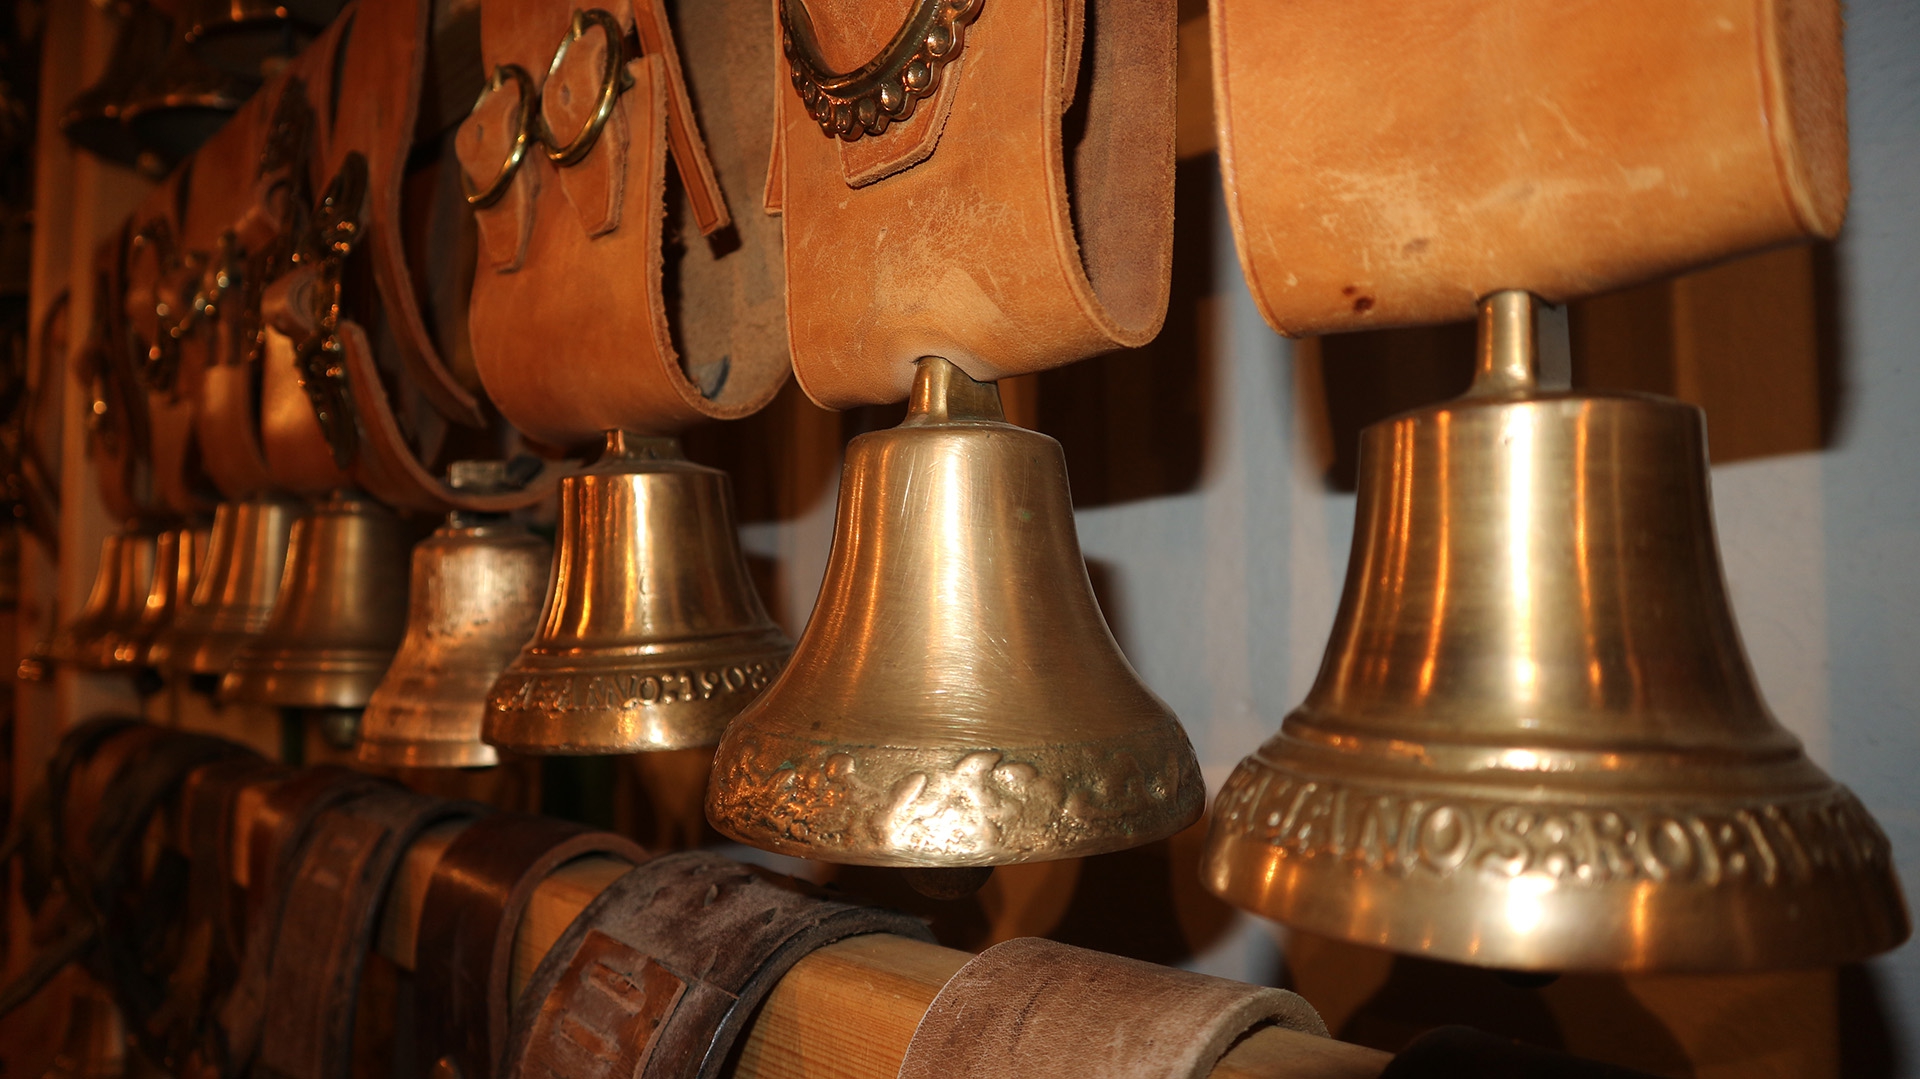 spiežovce v múzeu zvoncov